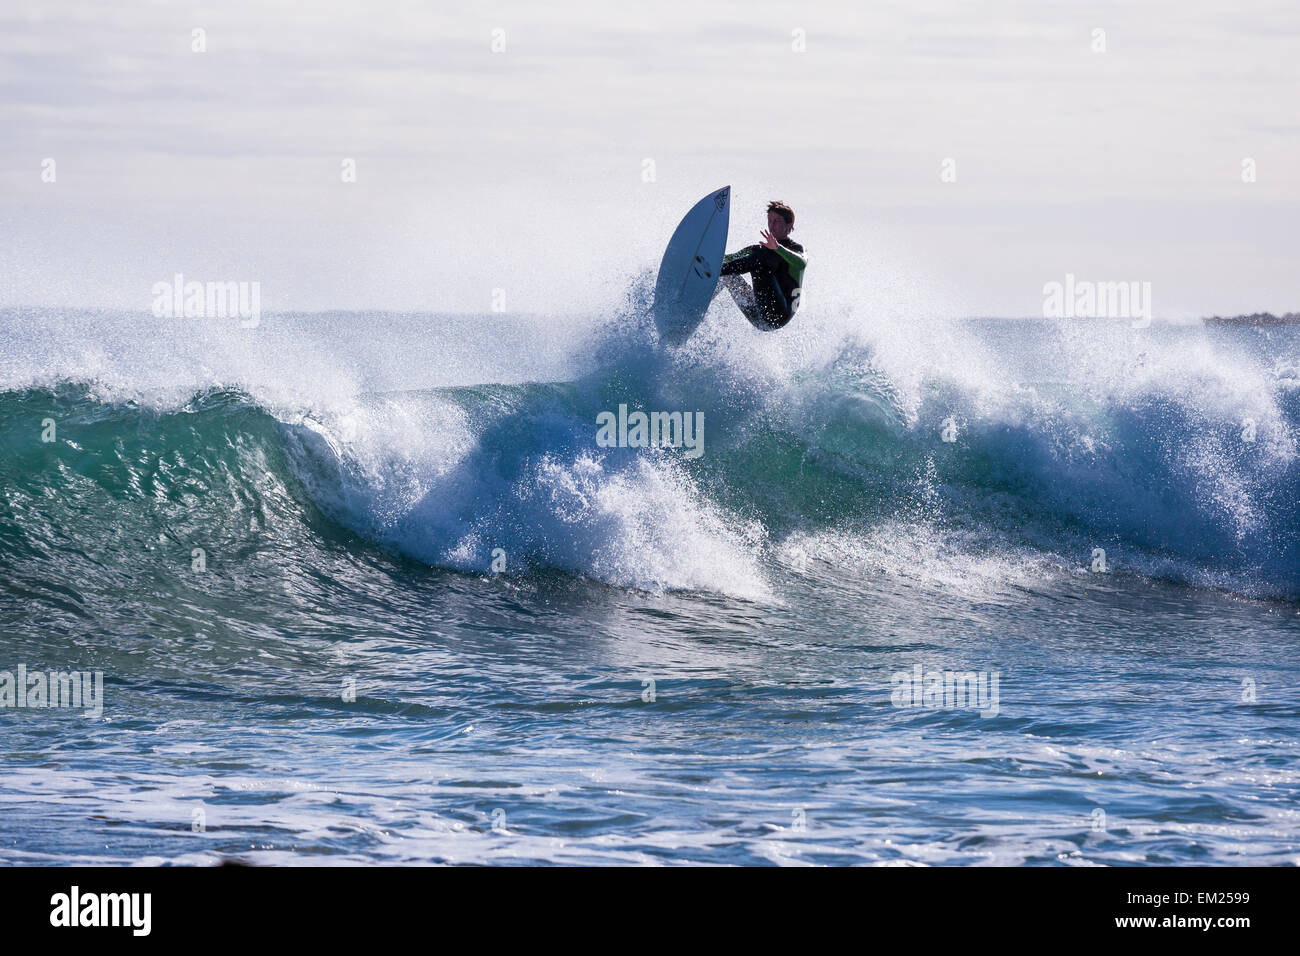 Surfer airing waves at Marrawah. Stock Photo